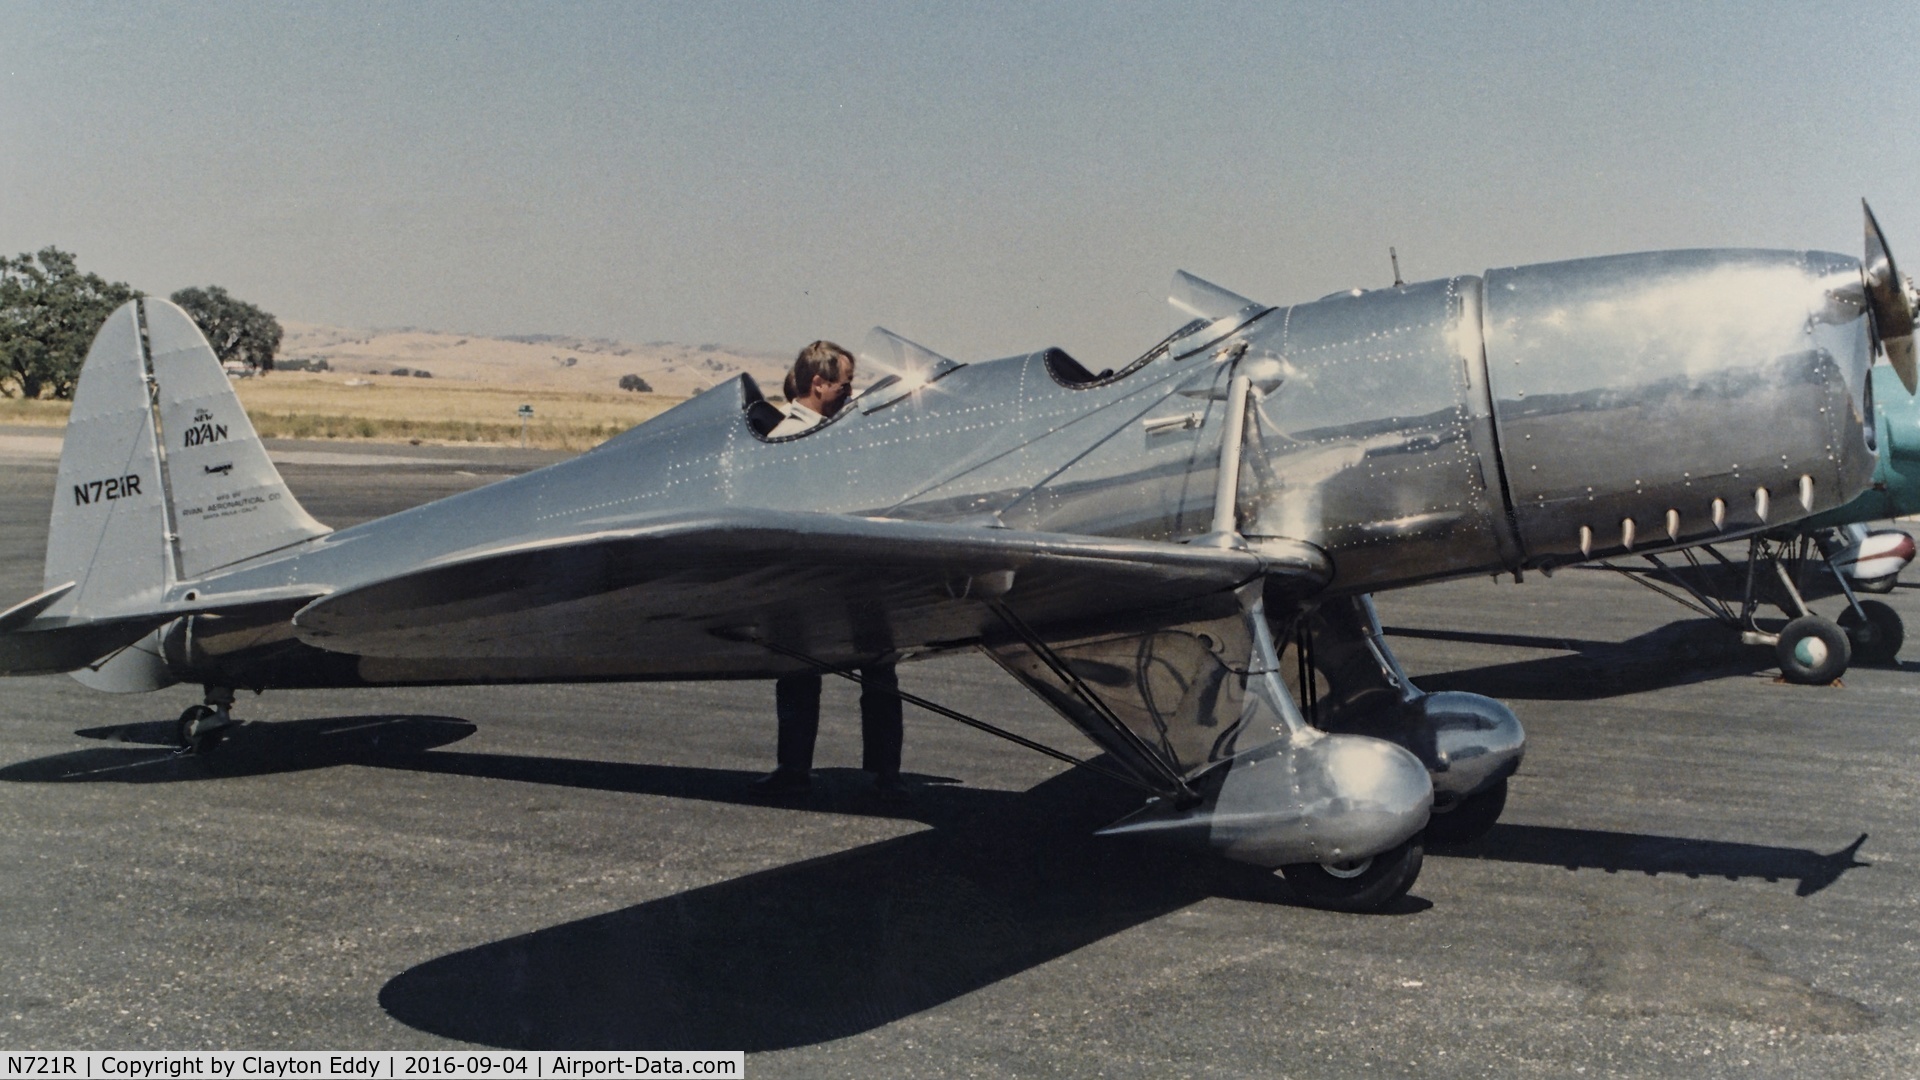 N721R, 1942 Ryan Aeronautical ST3KR C/N 1840, N721R picture taken in 1986 in California.